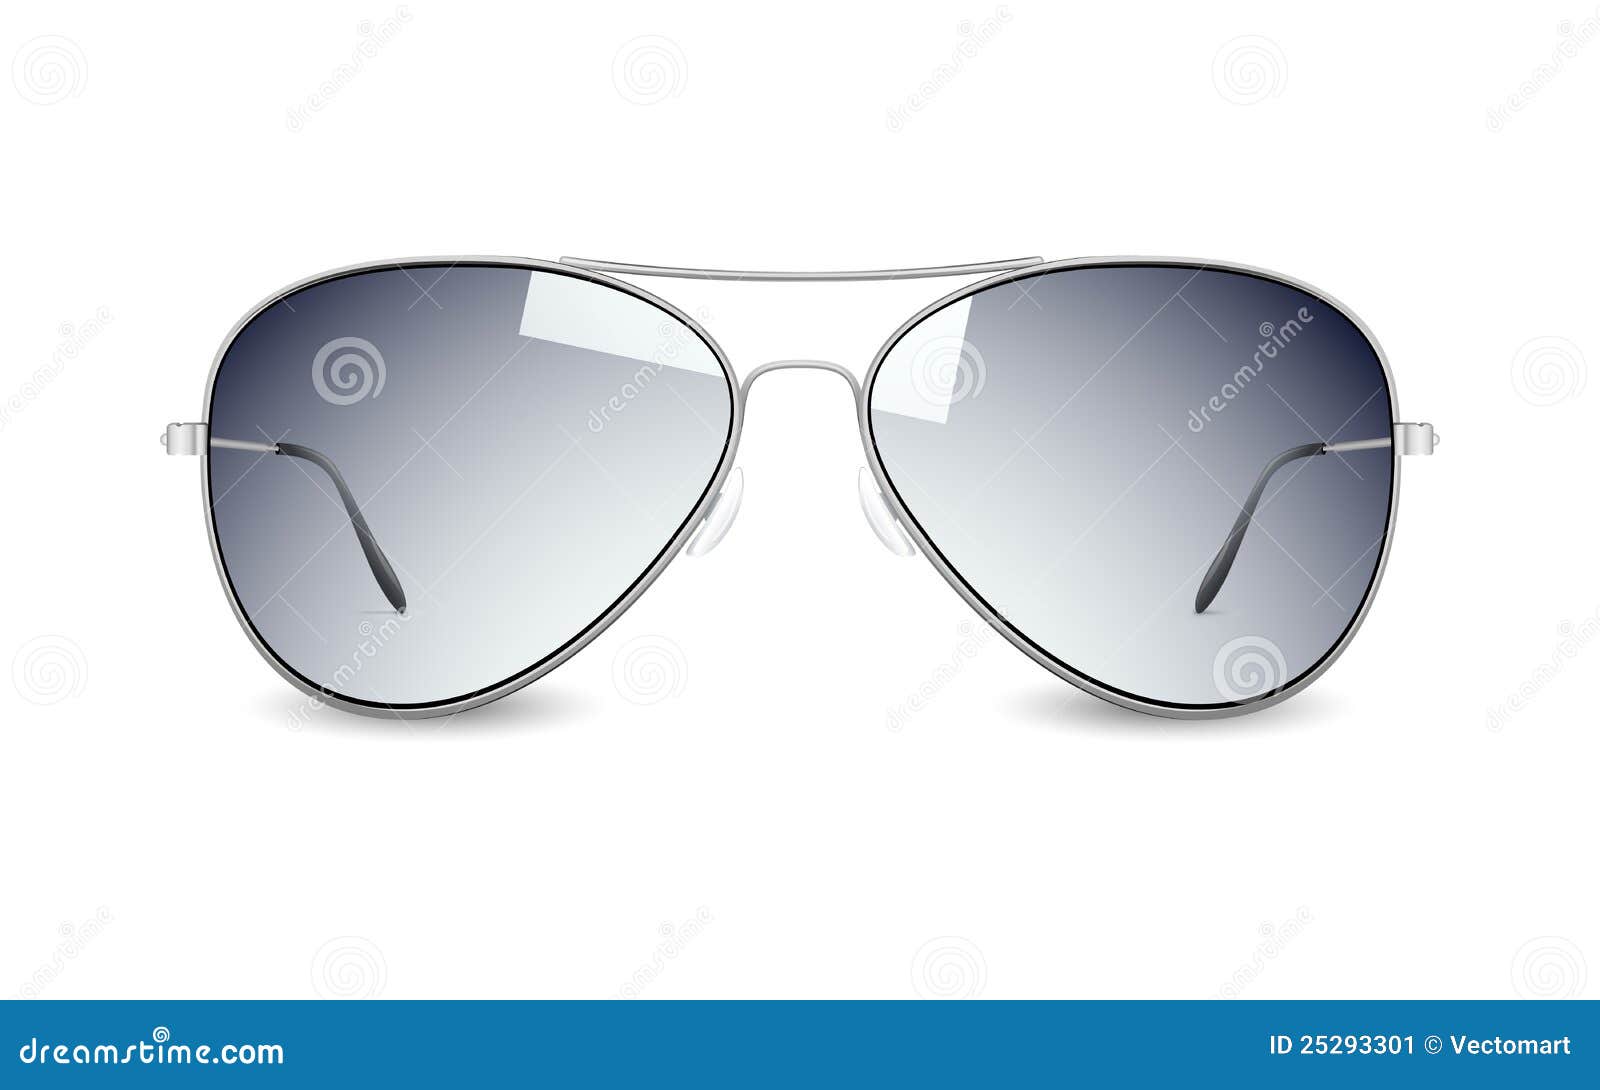 sun glasses